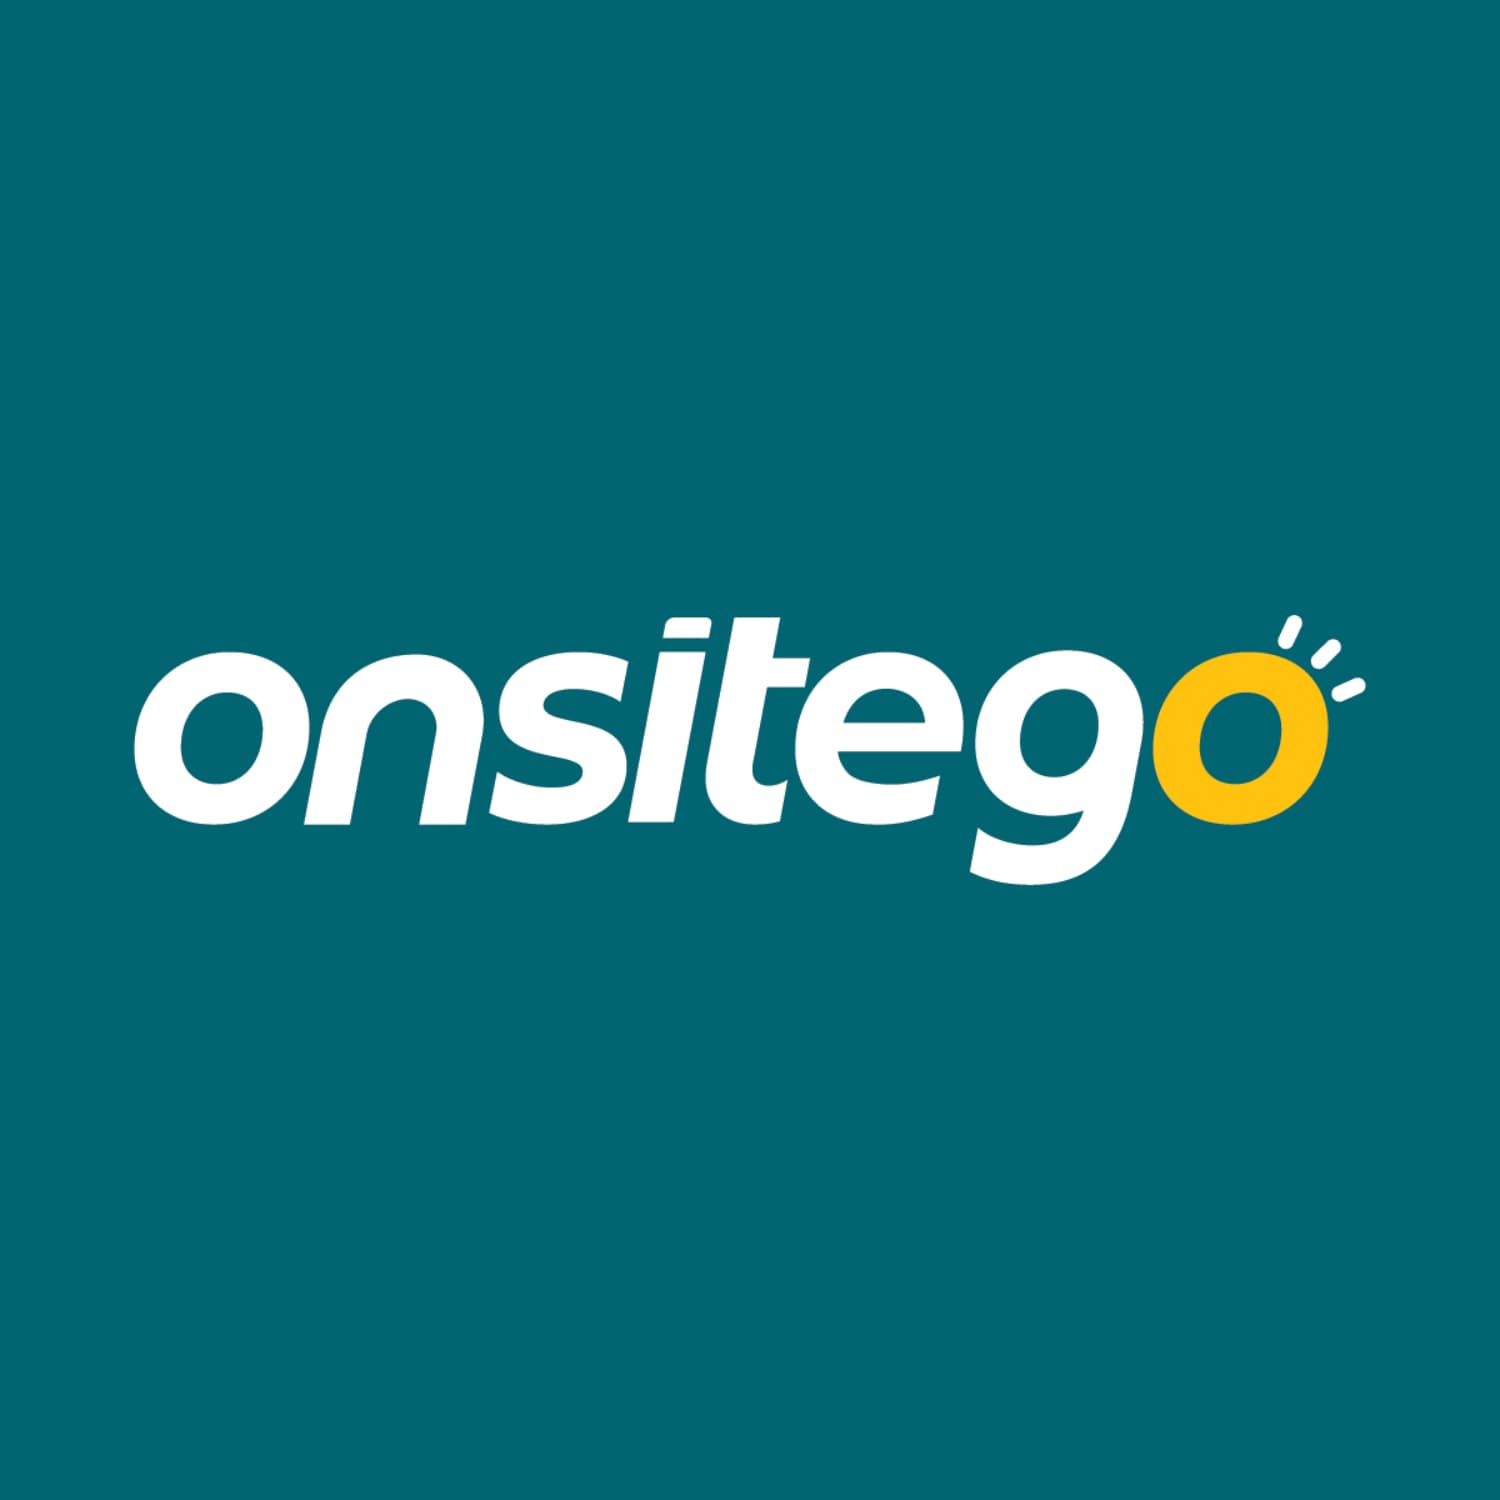 OnsiteGo's logo